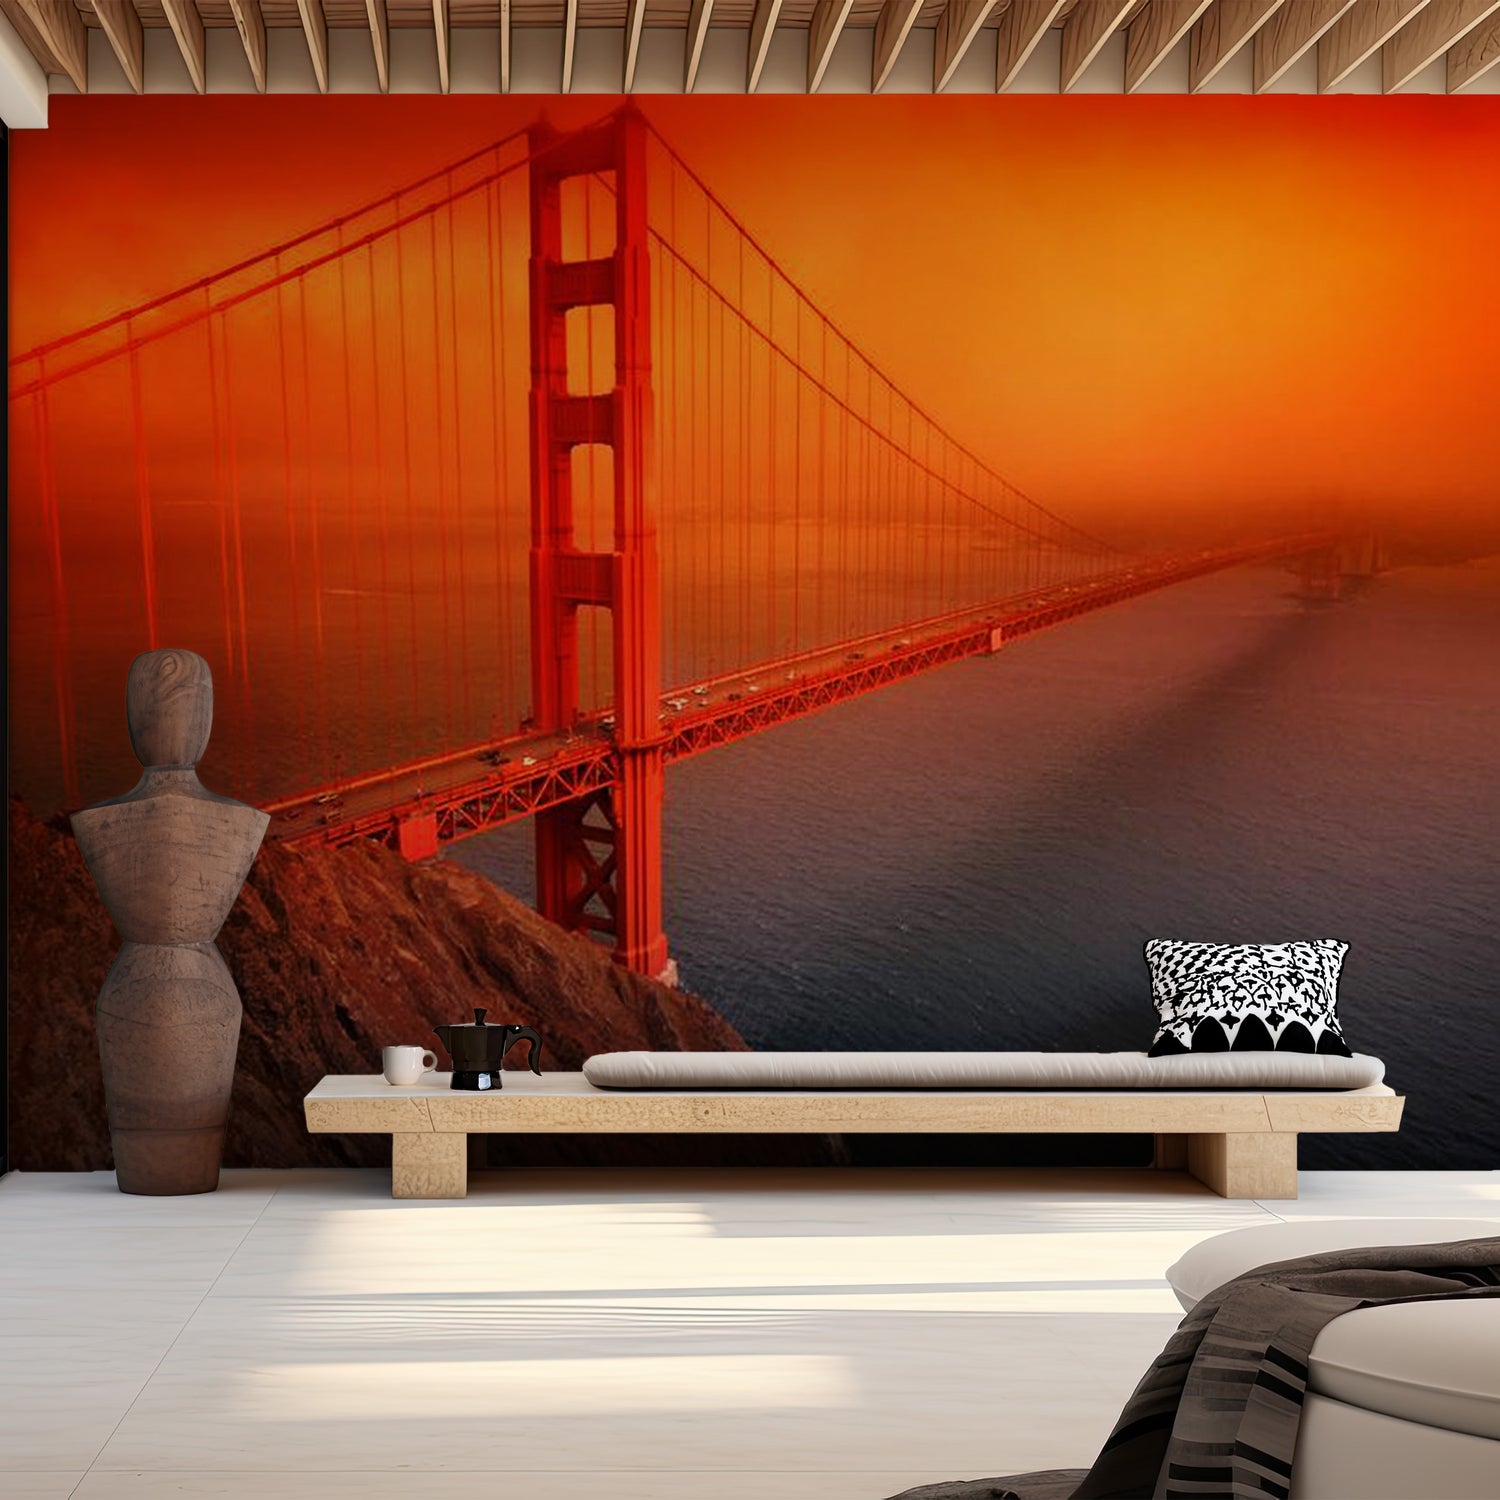 Cityscape Wallpaper Wall Mural - Golden Gate Bridge